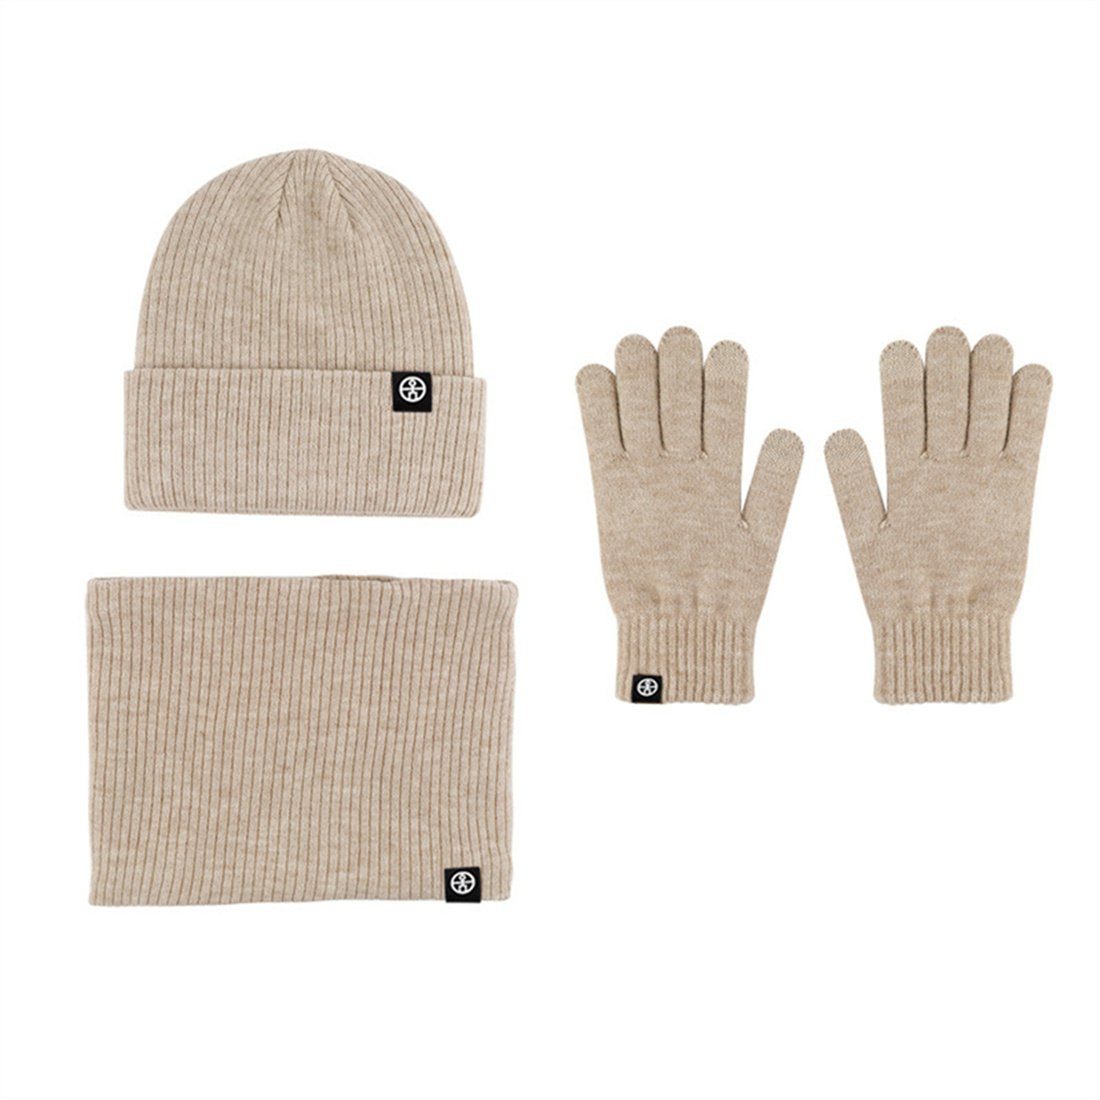 DÖRÖY Strickmütze Unisex Winter Warmth 3 Piece Set, Strickmütze + Schal + Handschuhe khaki